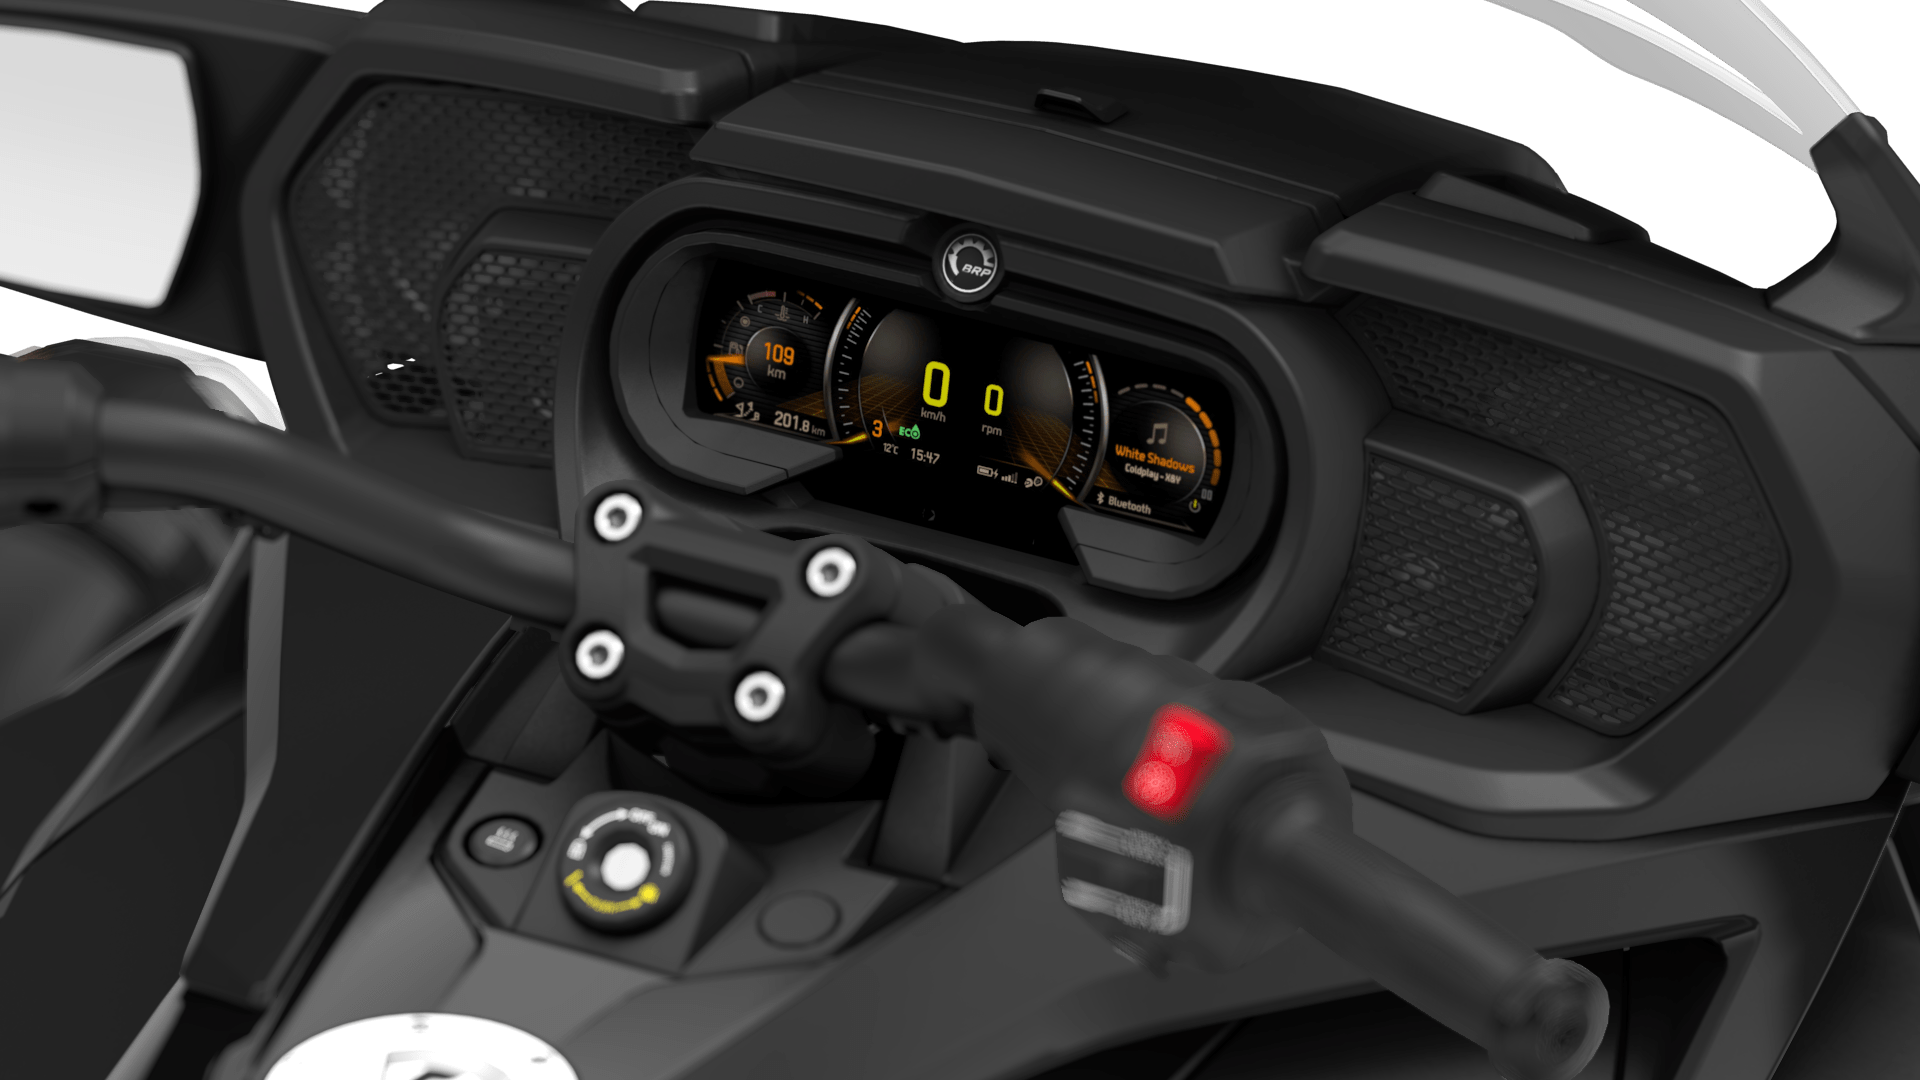 Consola de Can-Am Spyder, con asistente inteligente en modo ECO activado, vista desde el asiento del conductor.